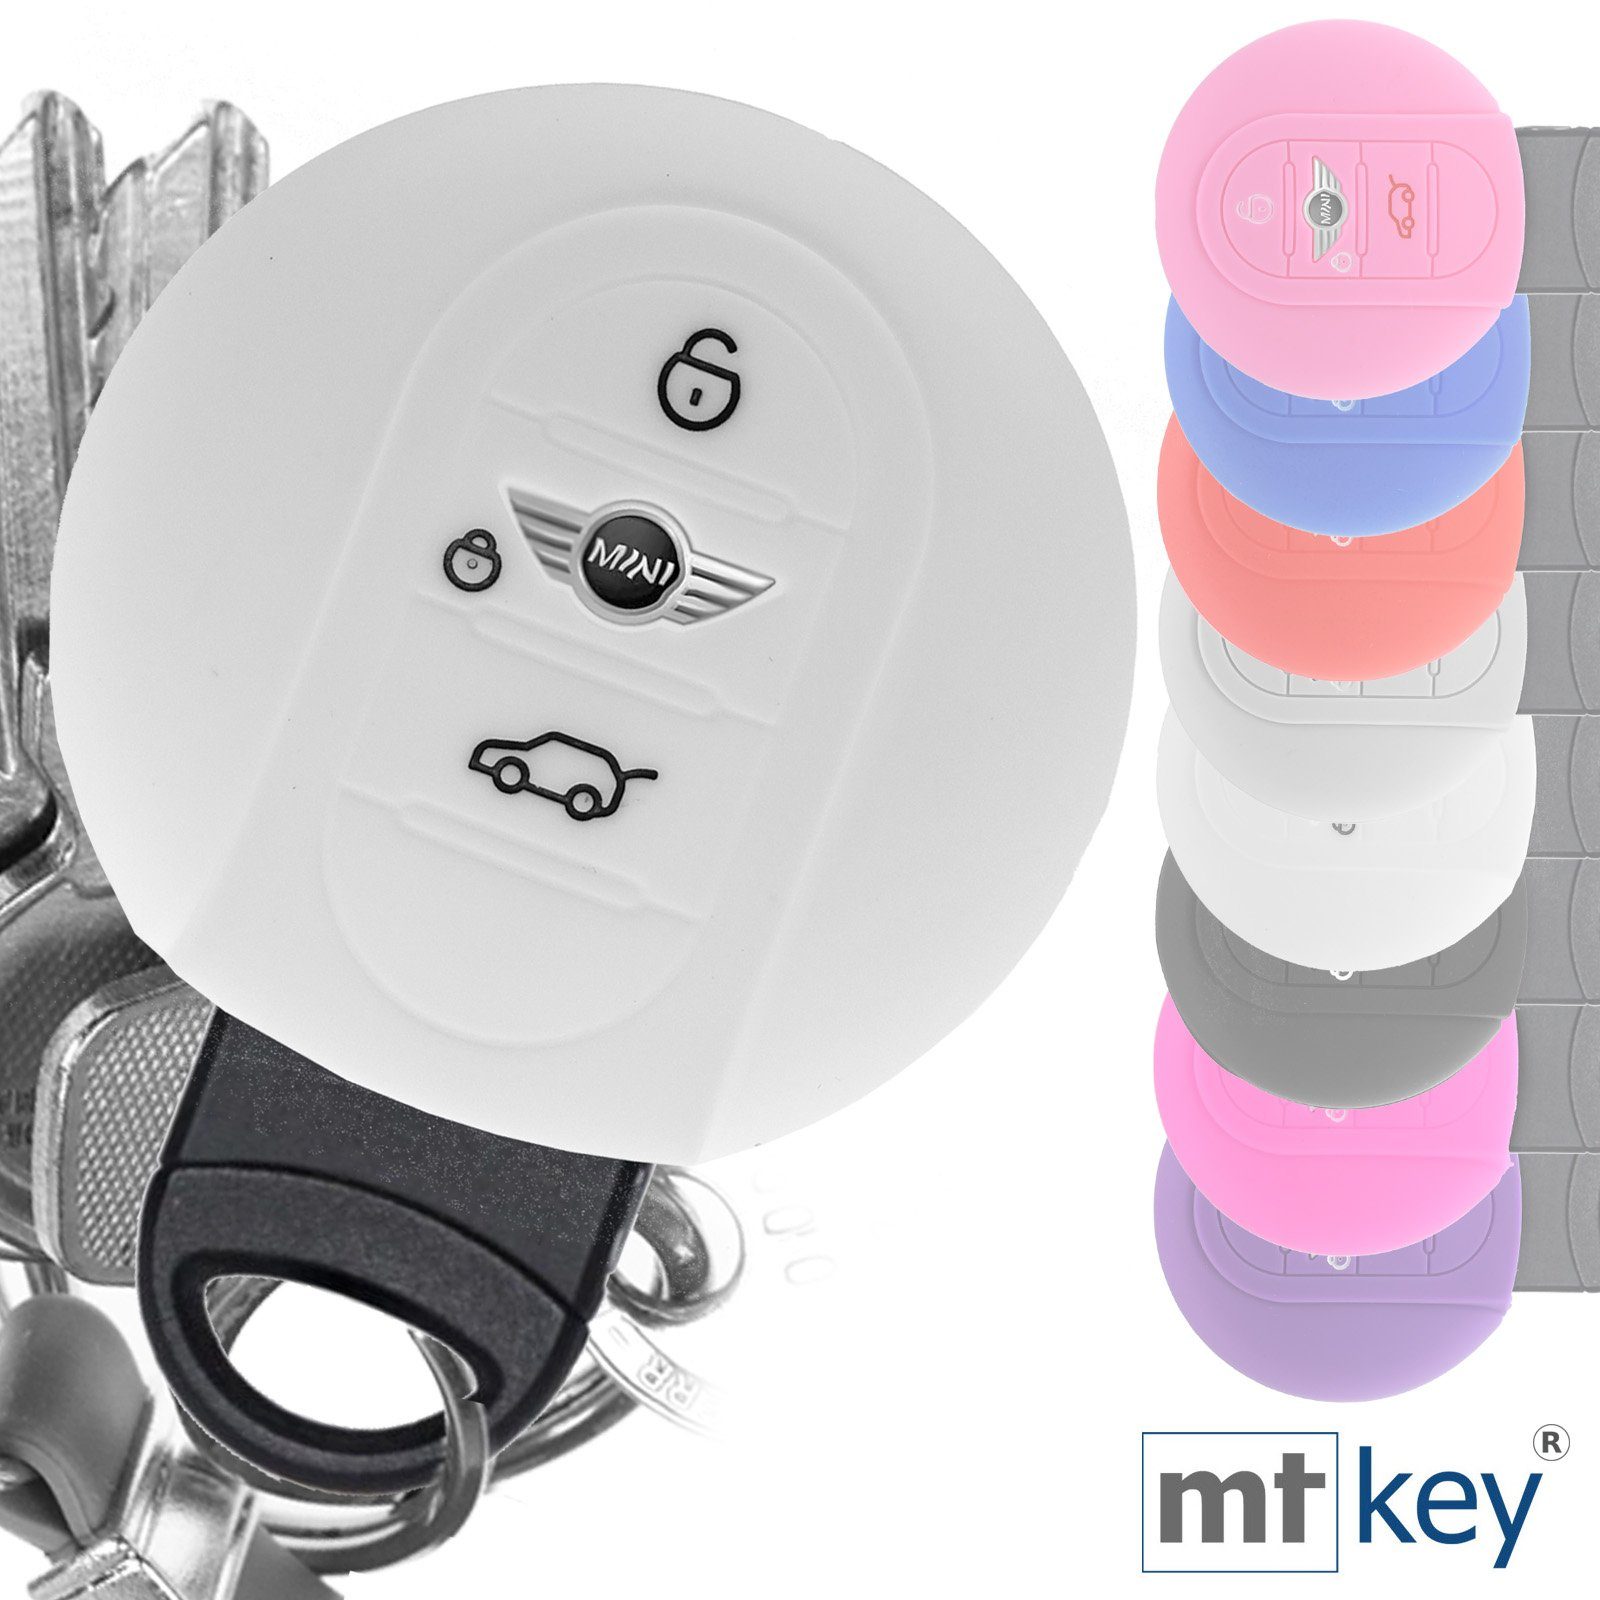 KEYLESS für Softcase Weiß F55 3 Schutzhülle Countryman mt-key F56 Schlüsselband, mit F54 Schlüsseltasche F60 F57 Silikon Clubman Autoschlüssel Tasten Mini